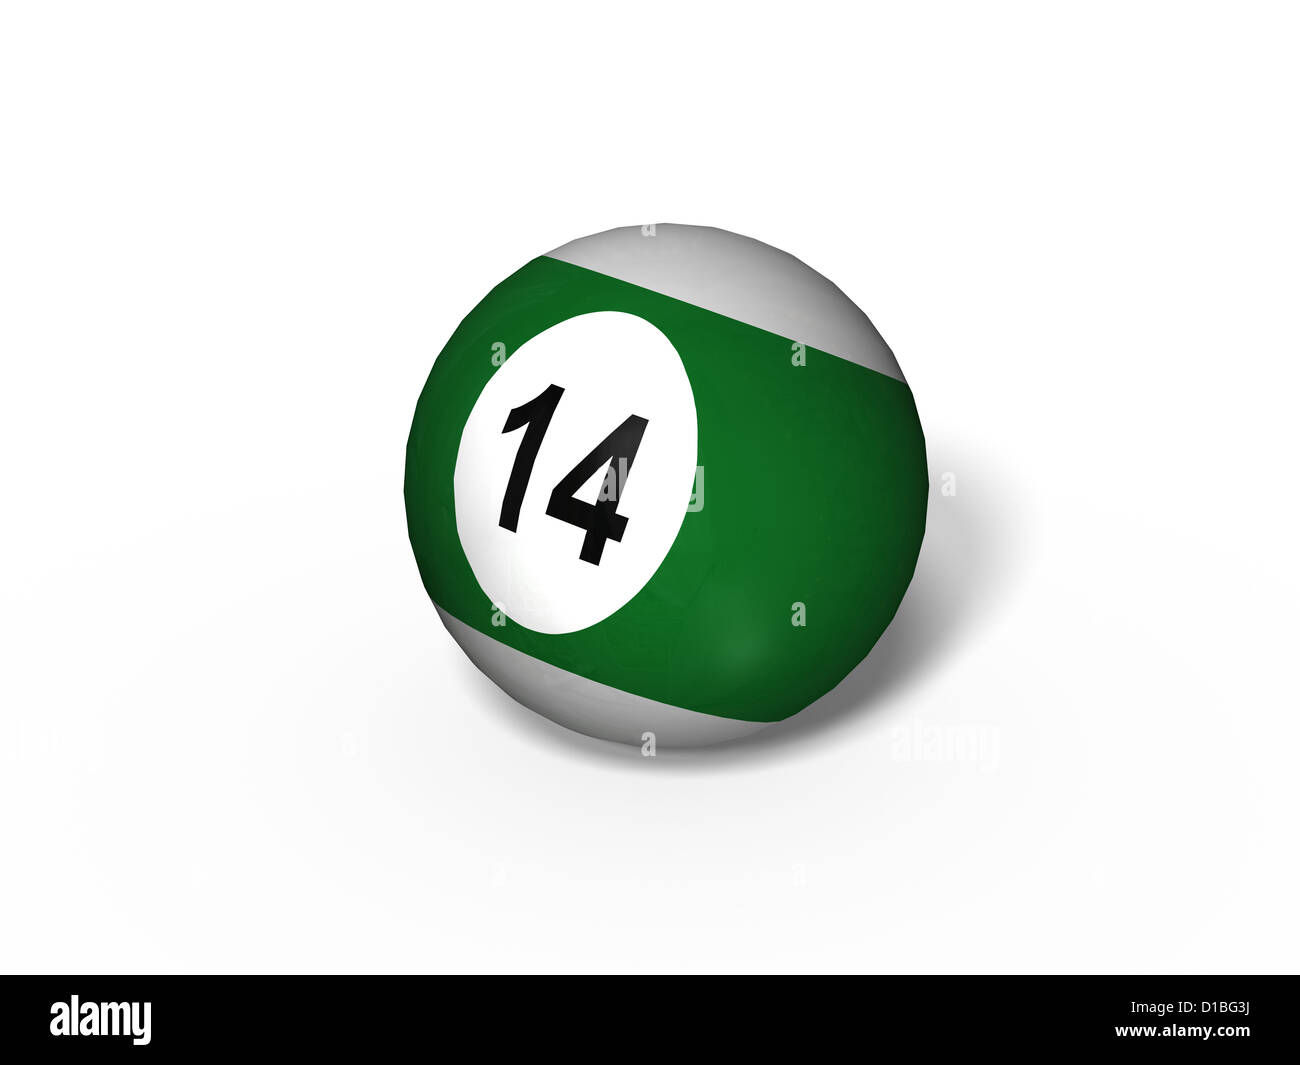 billiard billard ball number 14 fourteen green white background 3d render Stock Photo